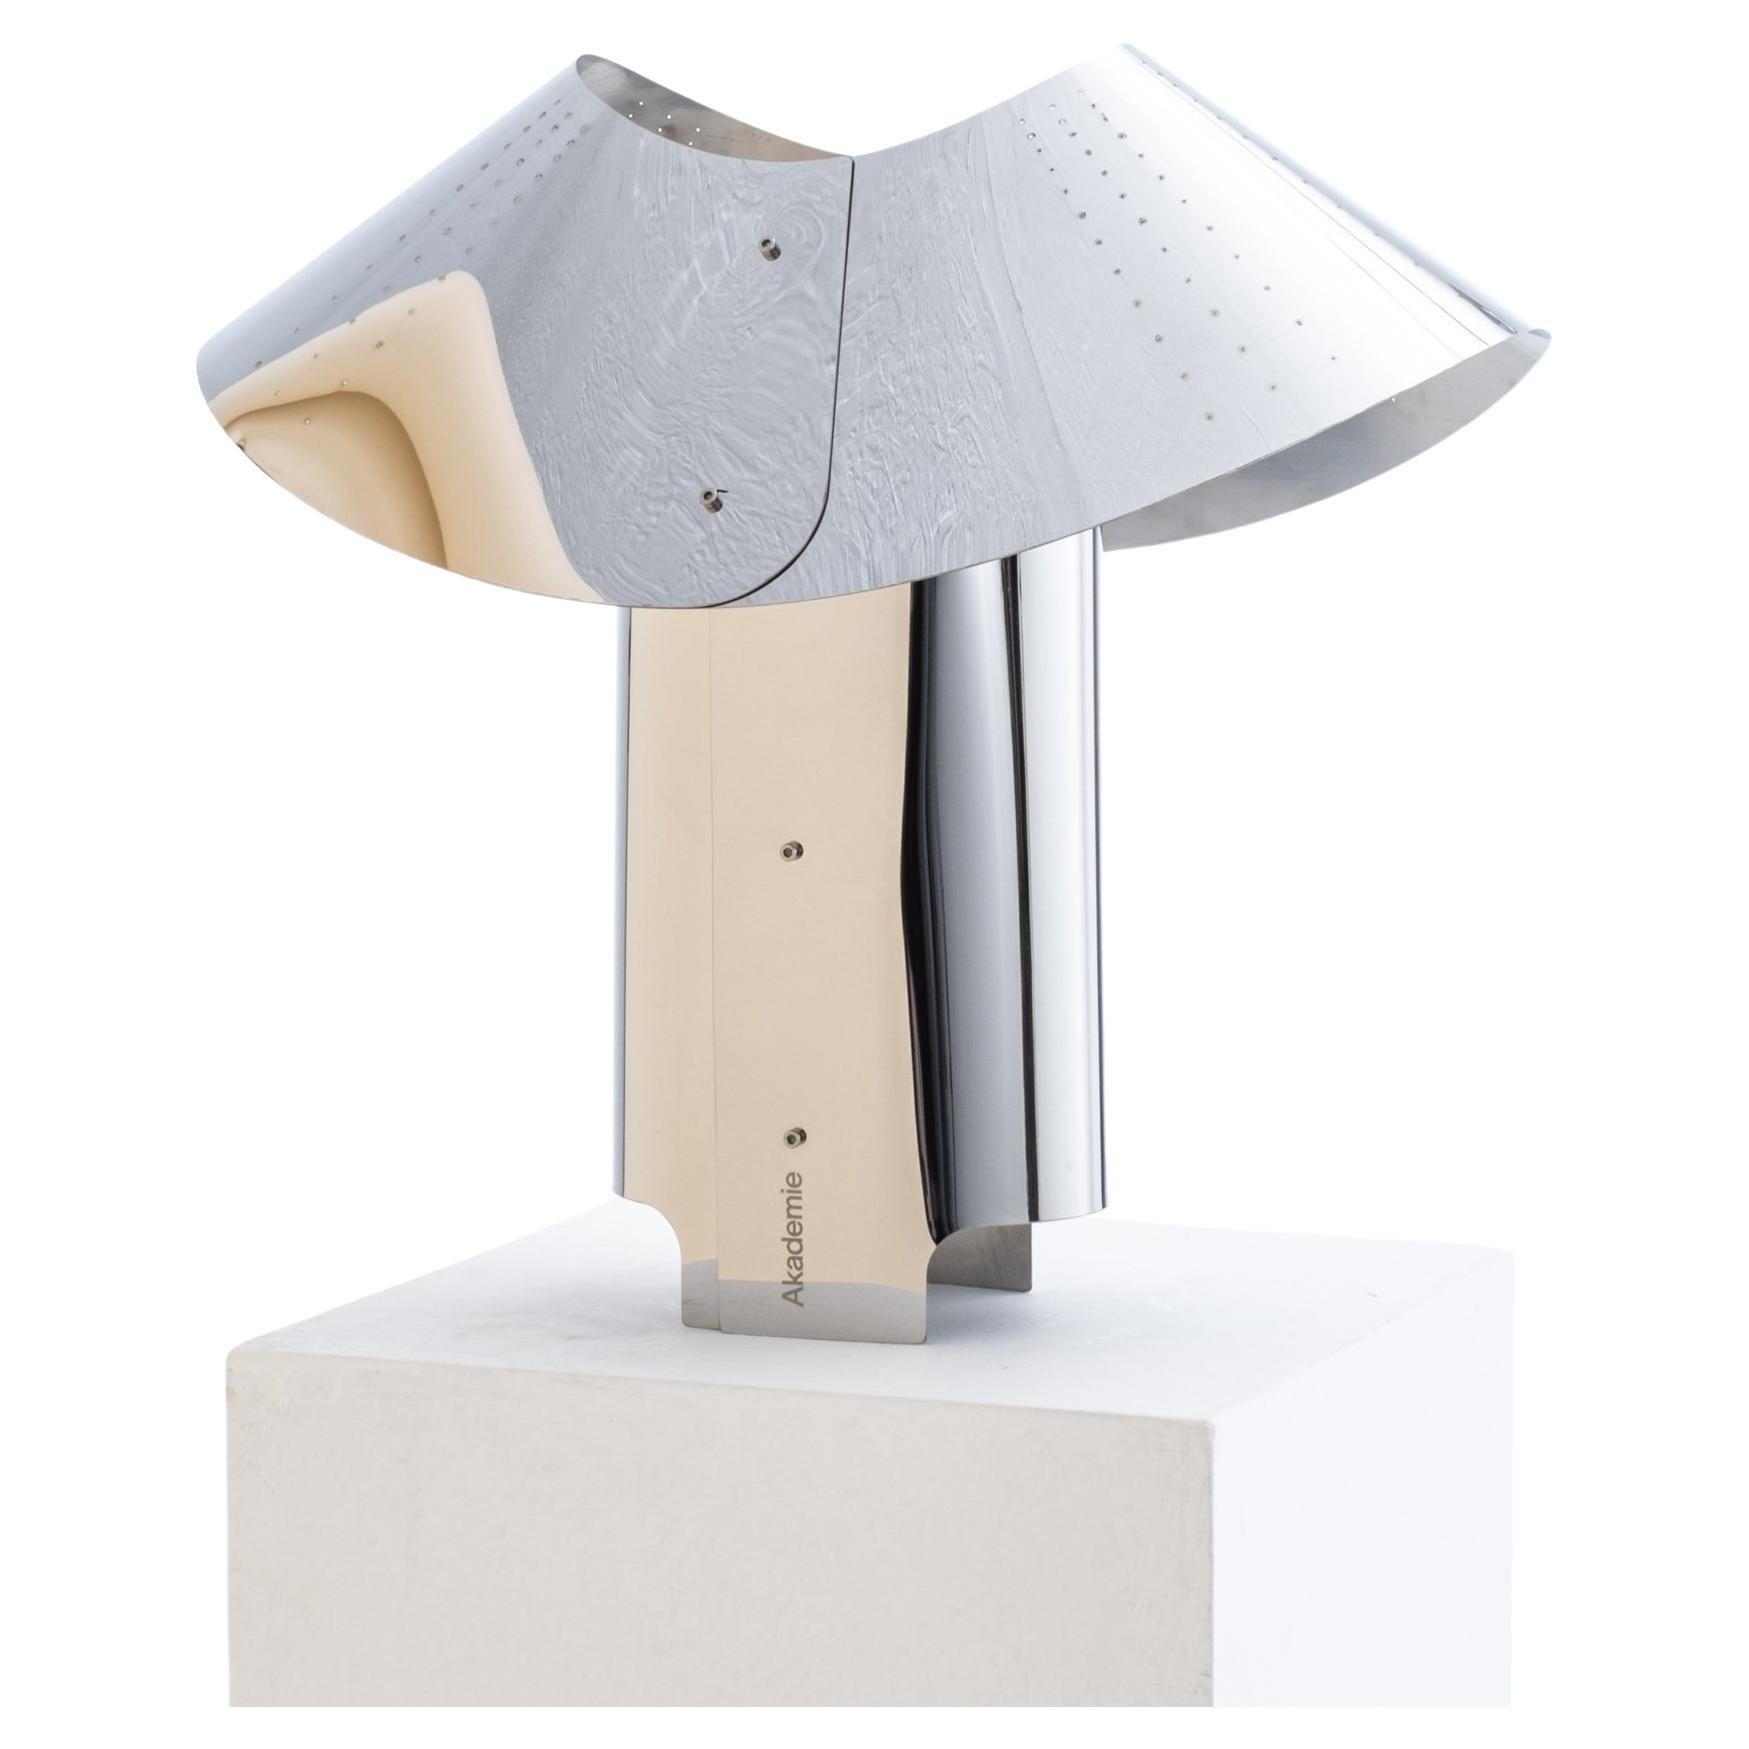 Par Studio Akademie
11Partenant de la collection ALMOST MIRROR, la lampe de table Foldes éclaire à la fois de l'intérieur et par les reflets. La forme unique est le résultat d'une expérimentation avec des feuilles d'acier inoxydable. La surface